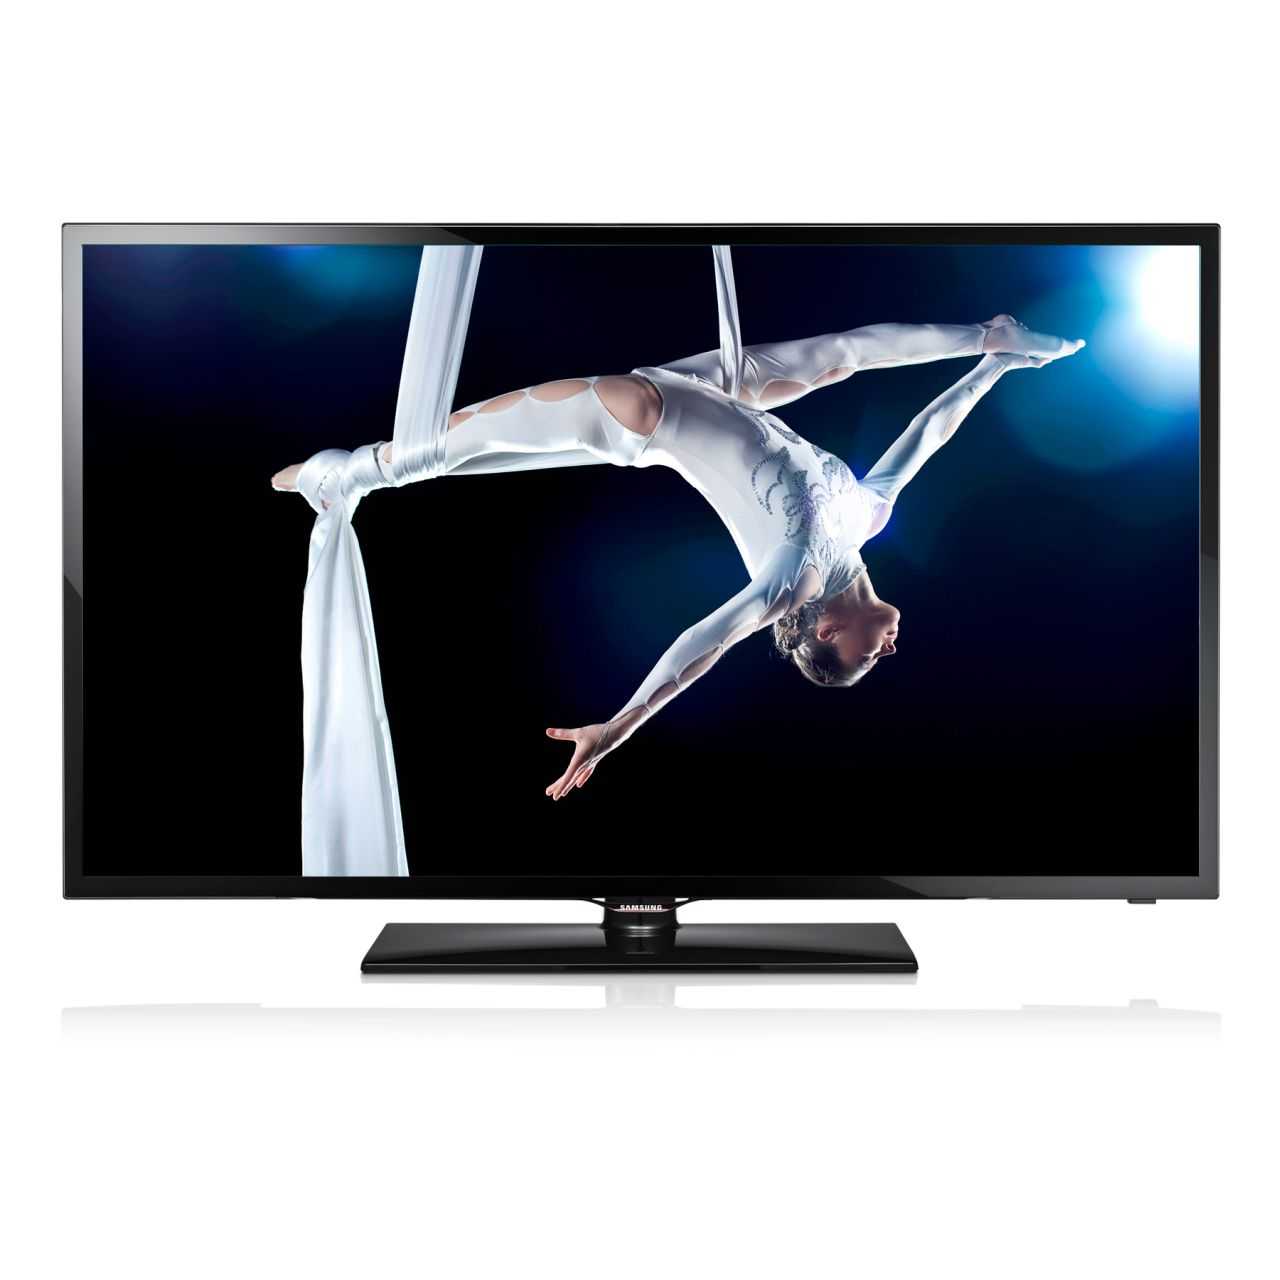 Samsung ue42f5000акx (черный) - купить , скидки, цена, отзывы, обзор, характеристики - телевизоры